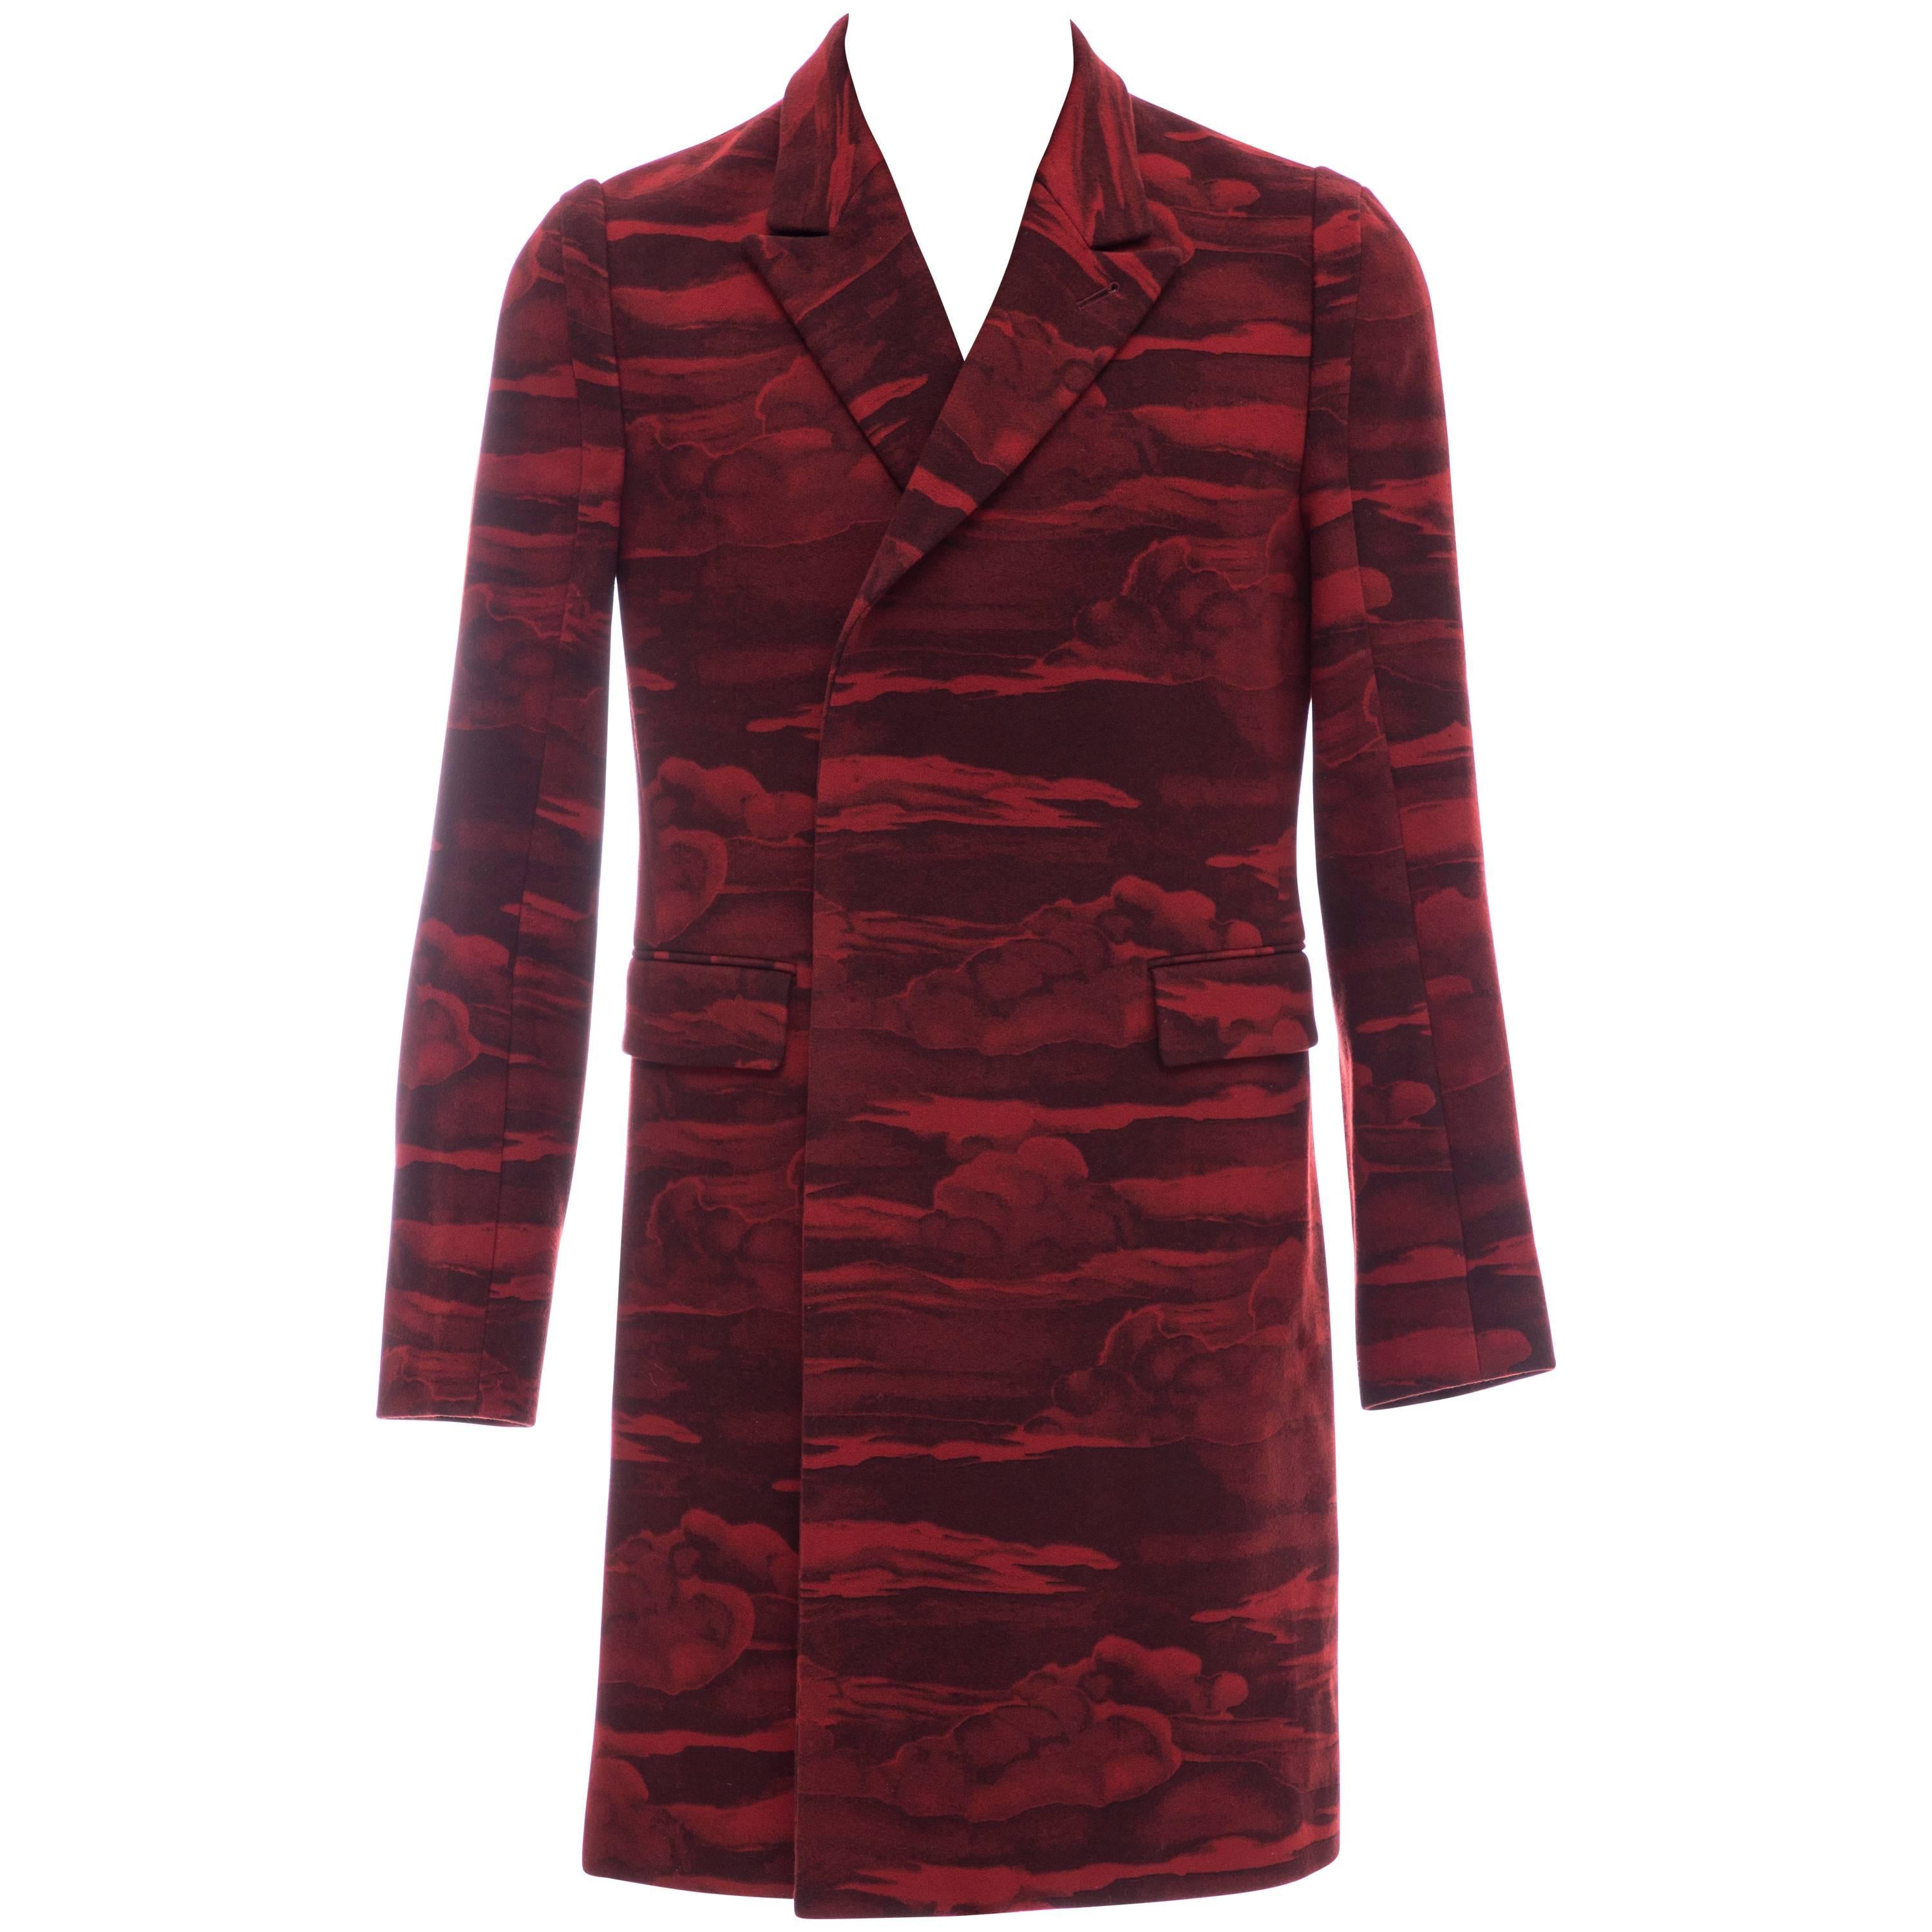 Kenzo Men's Runway Wool Red Cloud Print Coat, Fall 2013